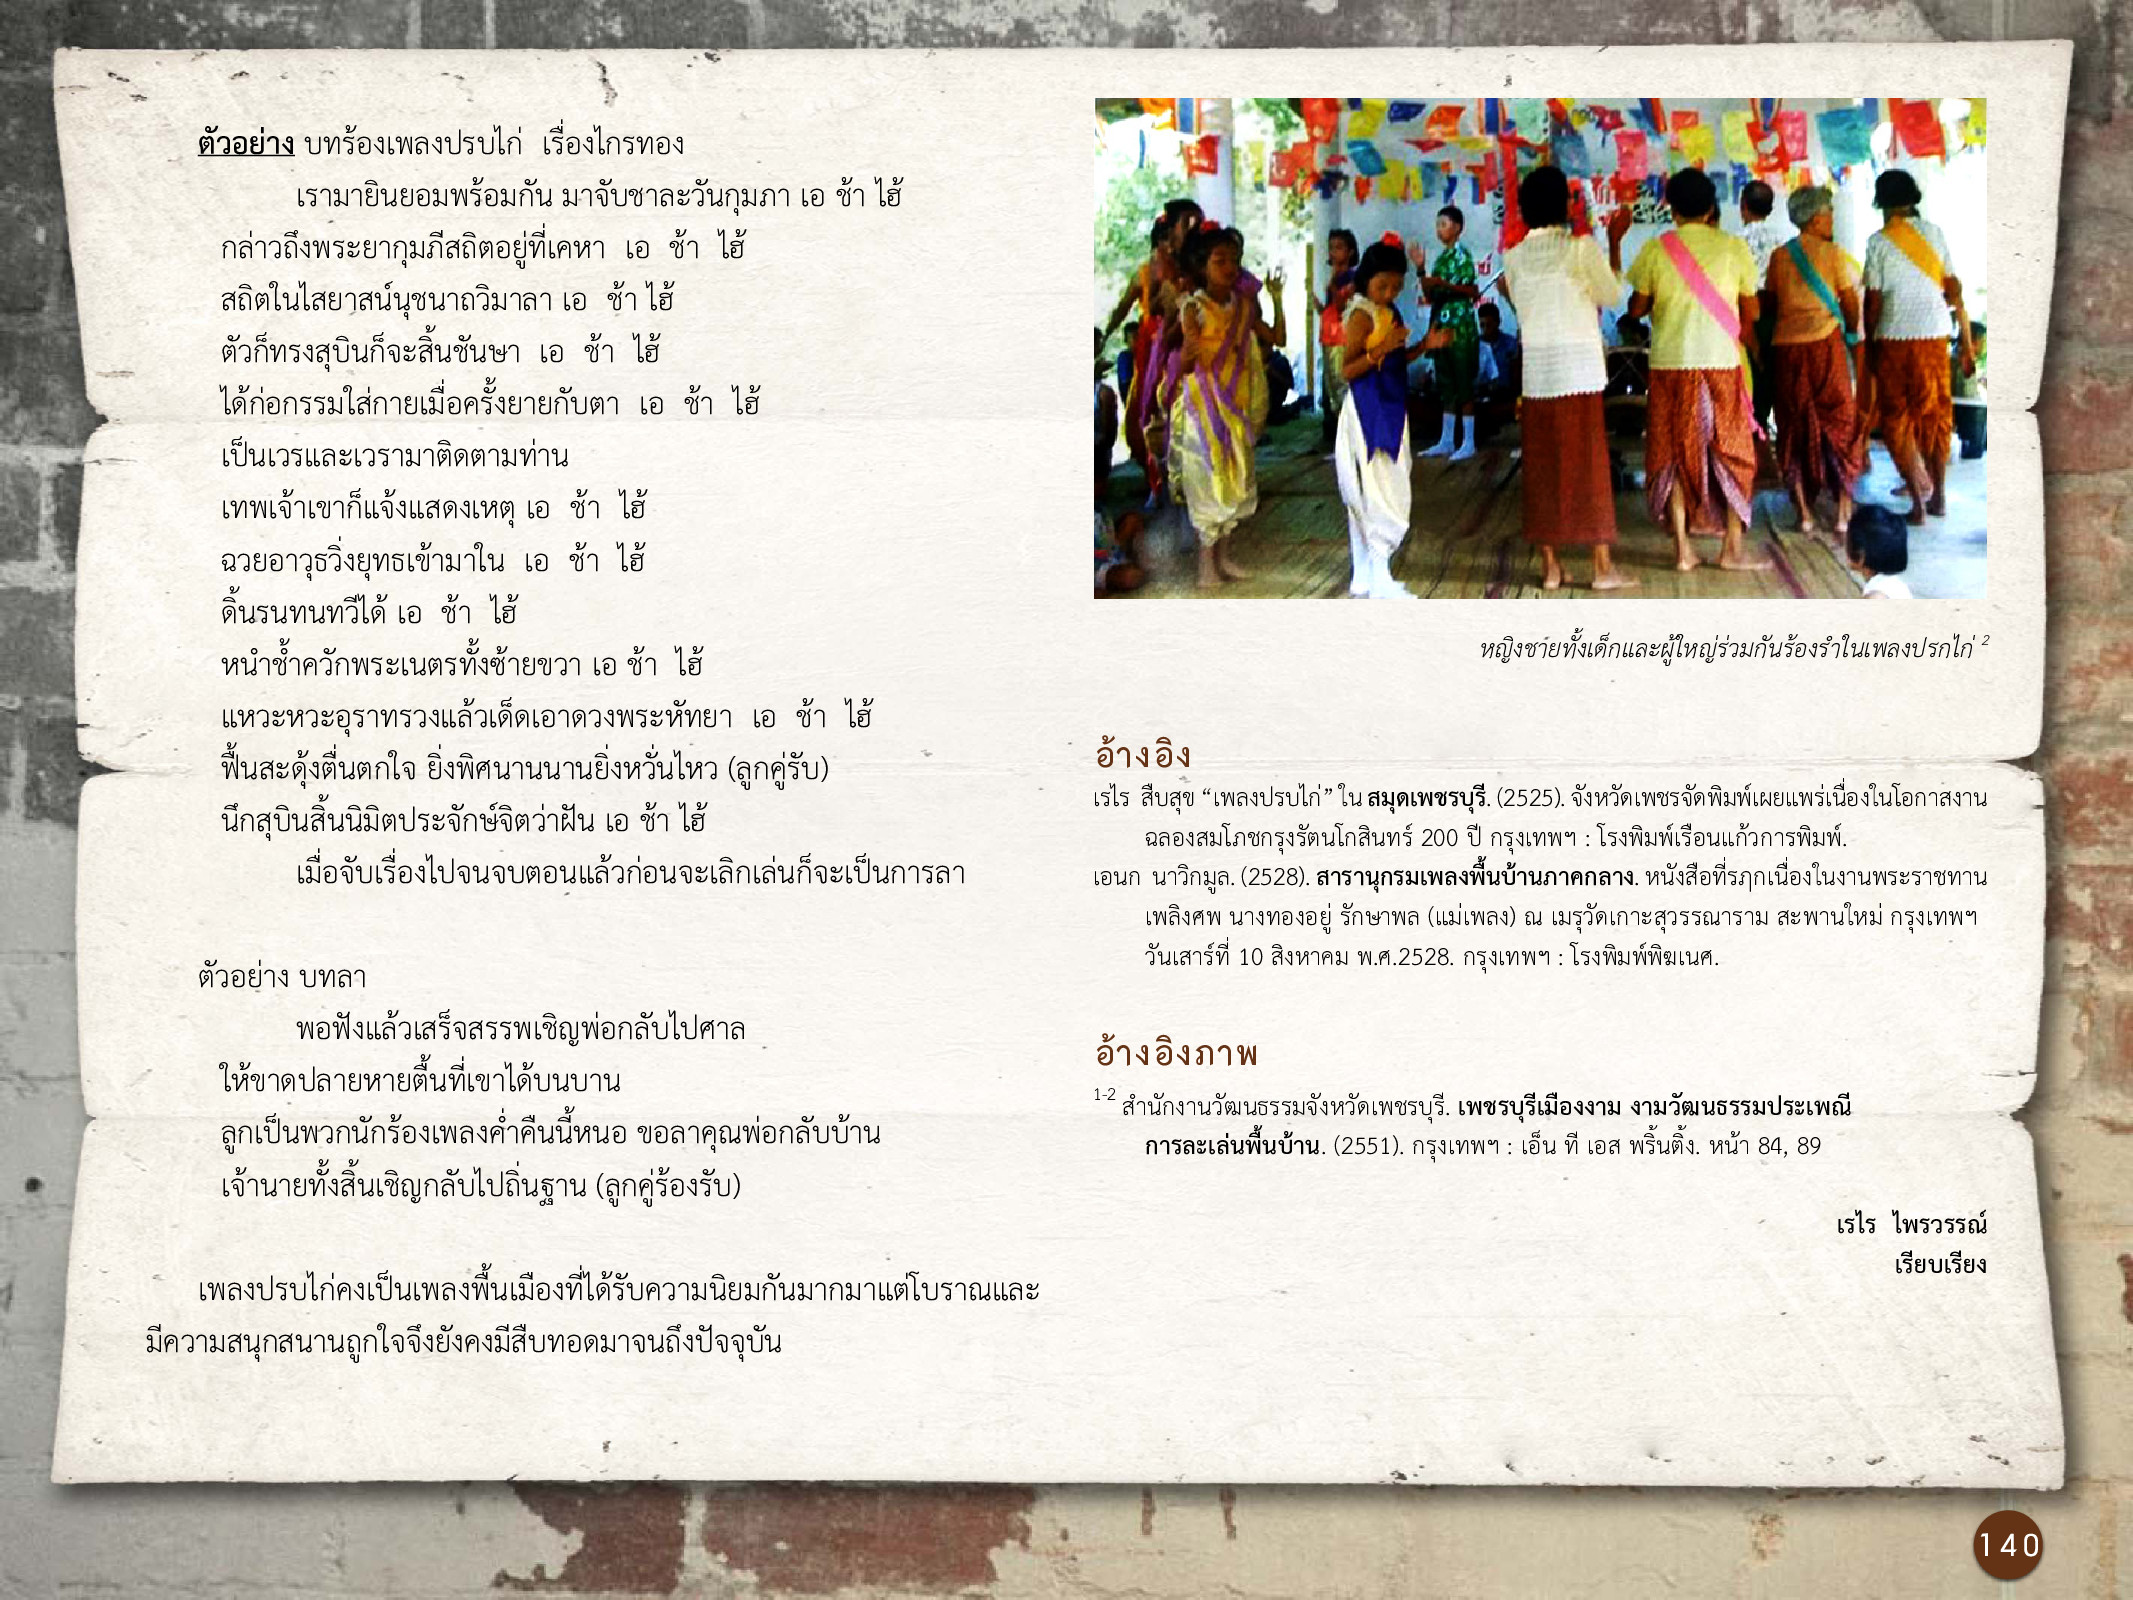 ศิลปกรรมกรุงธนบุรี ./images/encyclopedia/140.jpg